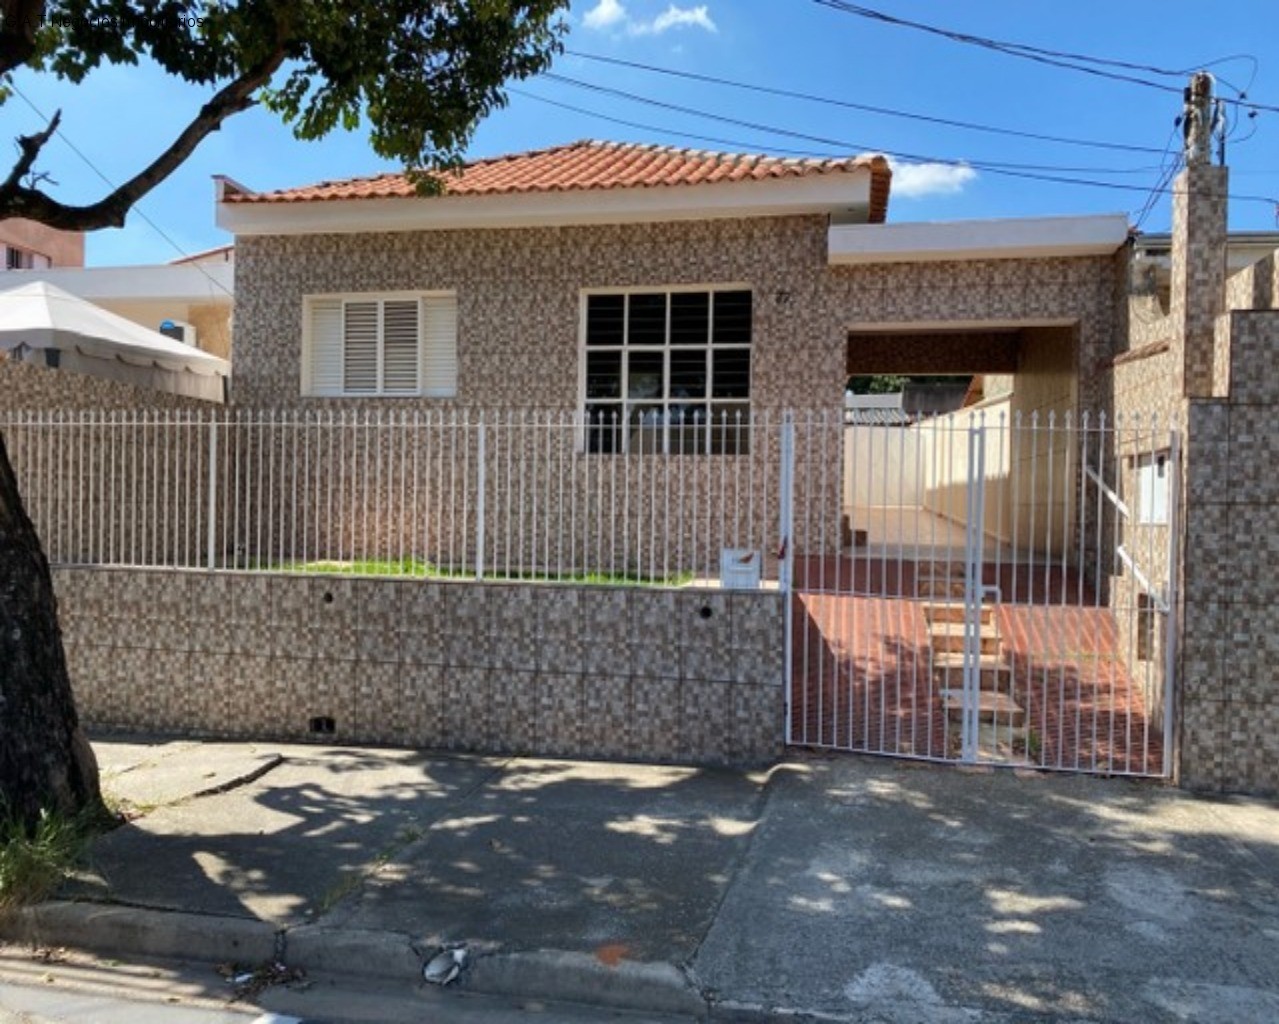 Casa para venda em Sorocaba / SP, Caguaçu, 3 dormitórios, 1